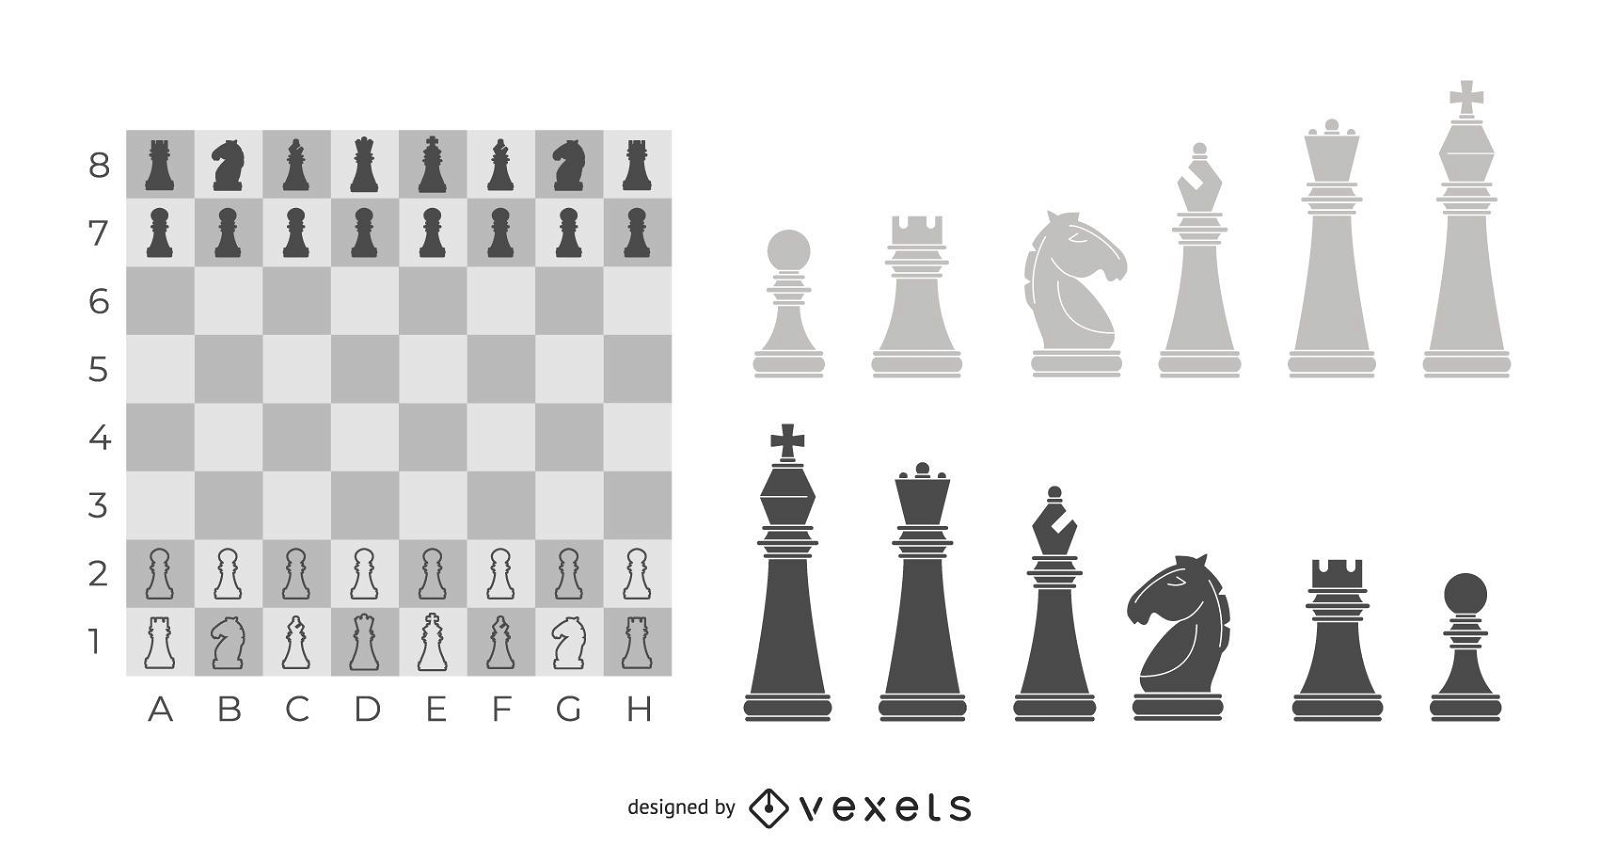 Desenho de ilustração de peças de xadrez